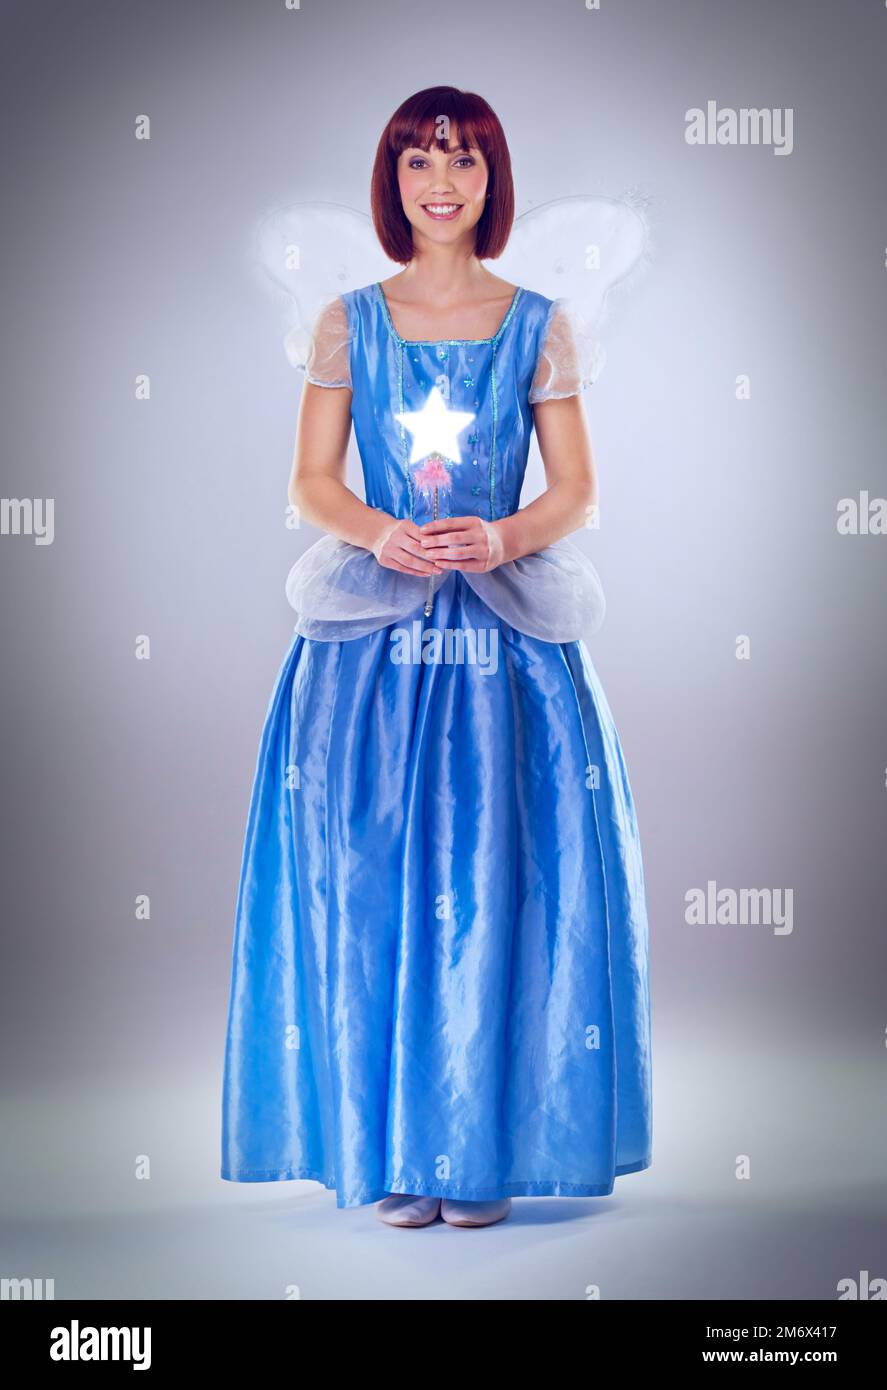 Prêt à accorder vos souhaits. Une photo en longueur d'une fillette de fées dans une robe bleue. Banque D'Images